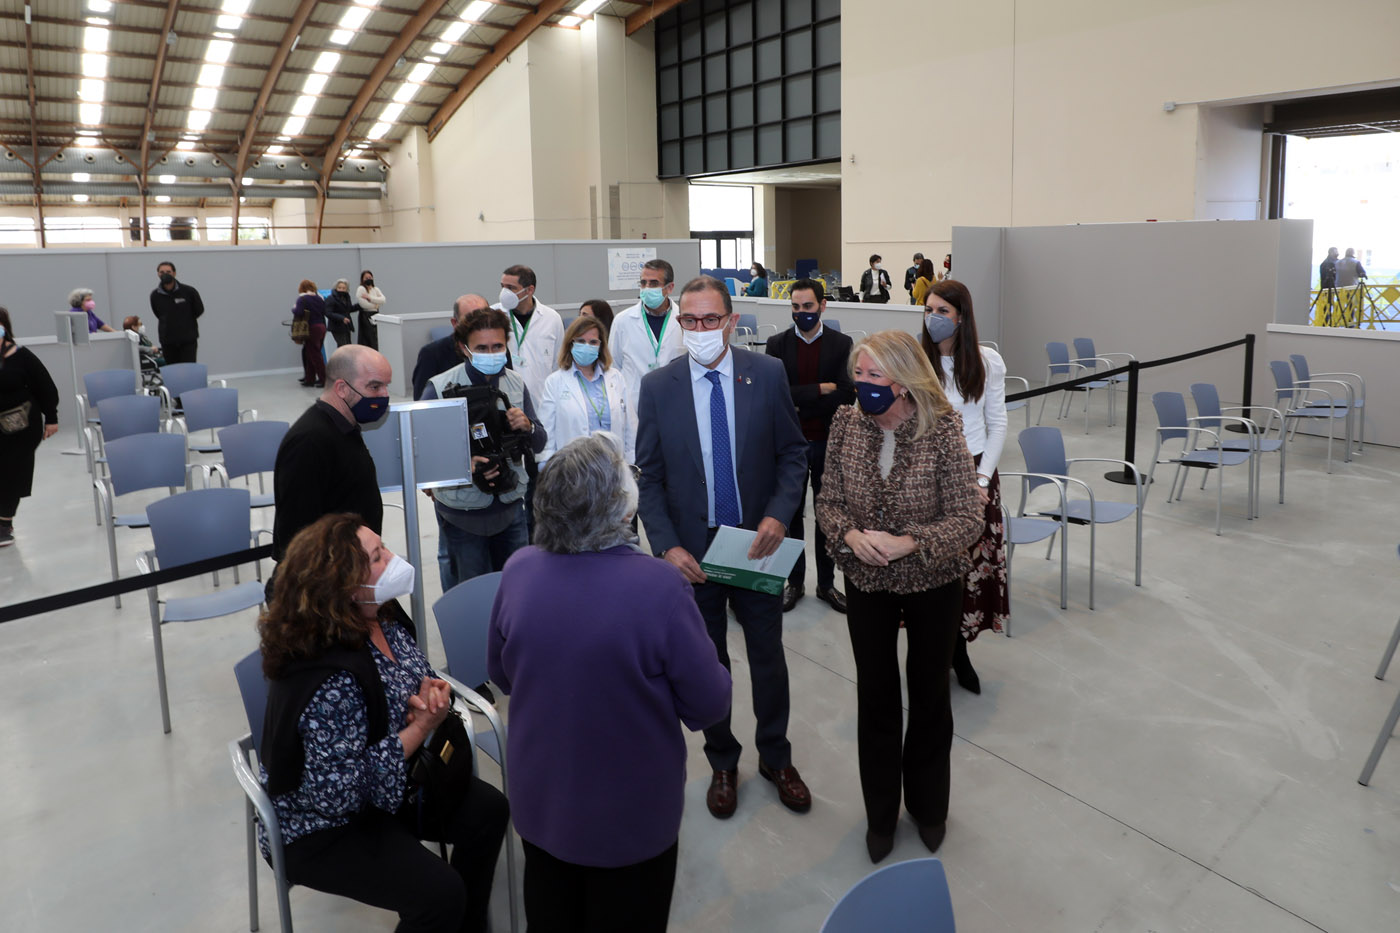 Los dos centros de vacunación Covid habilitados por el Ayuntamiento en Marbella y San Pedro Alcántara permitirán inmunizar a más de 10.000 personas a la semana